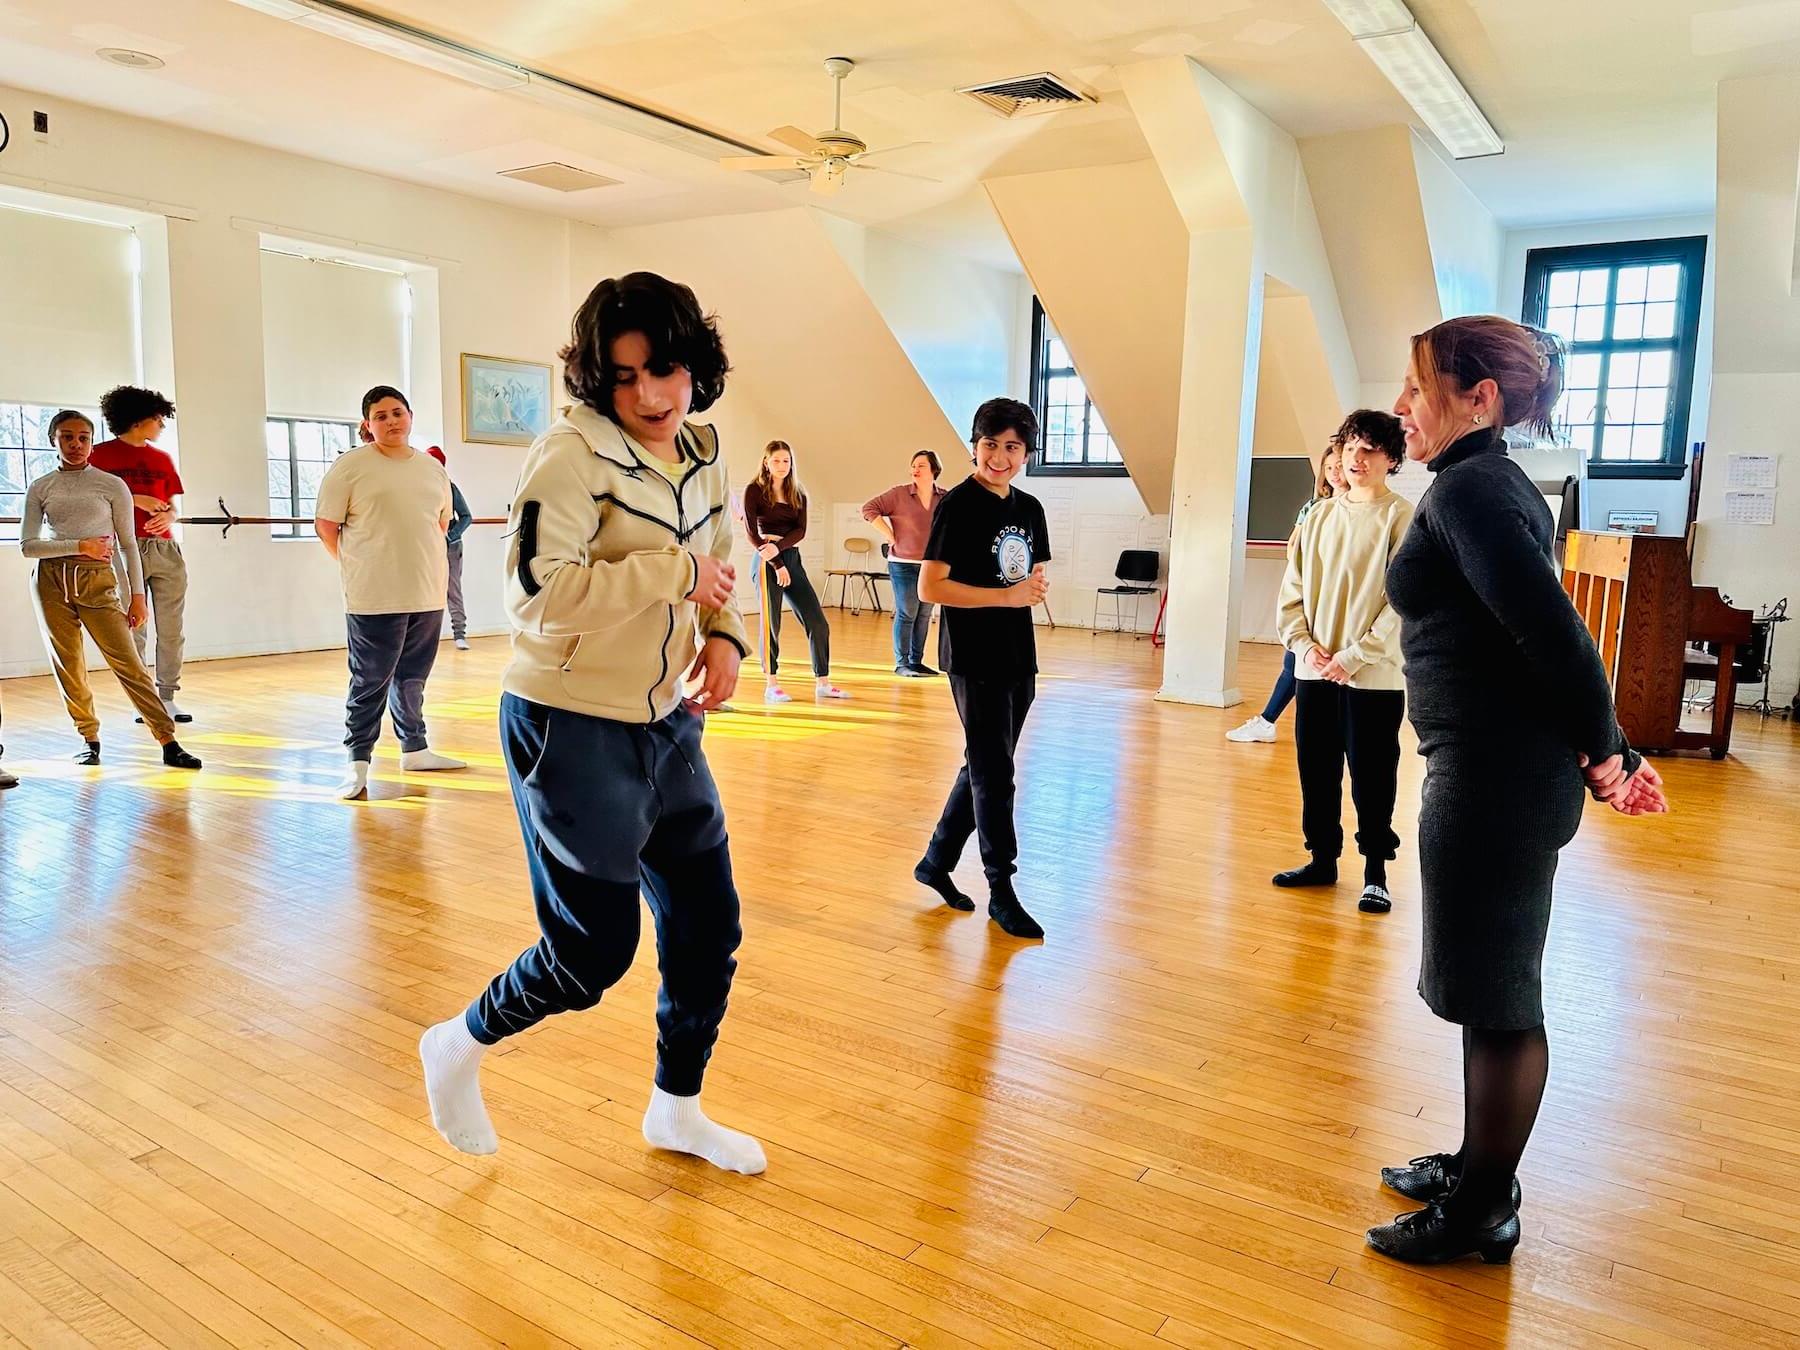 菲尔德斯顿中学学生在萨尔萨舞课上跳舞